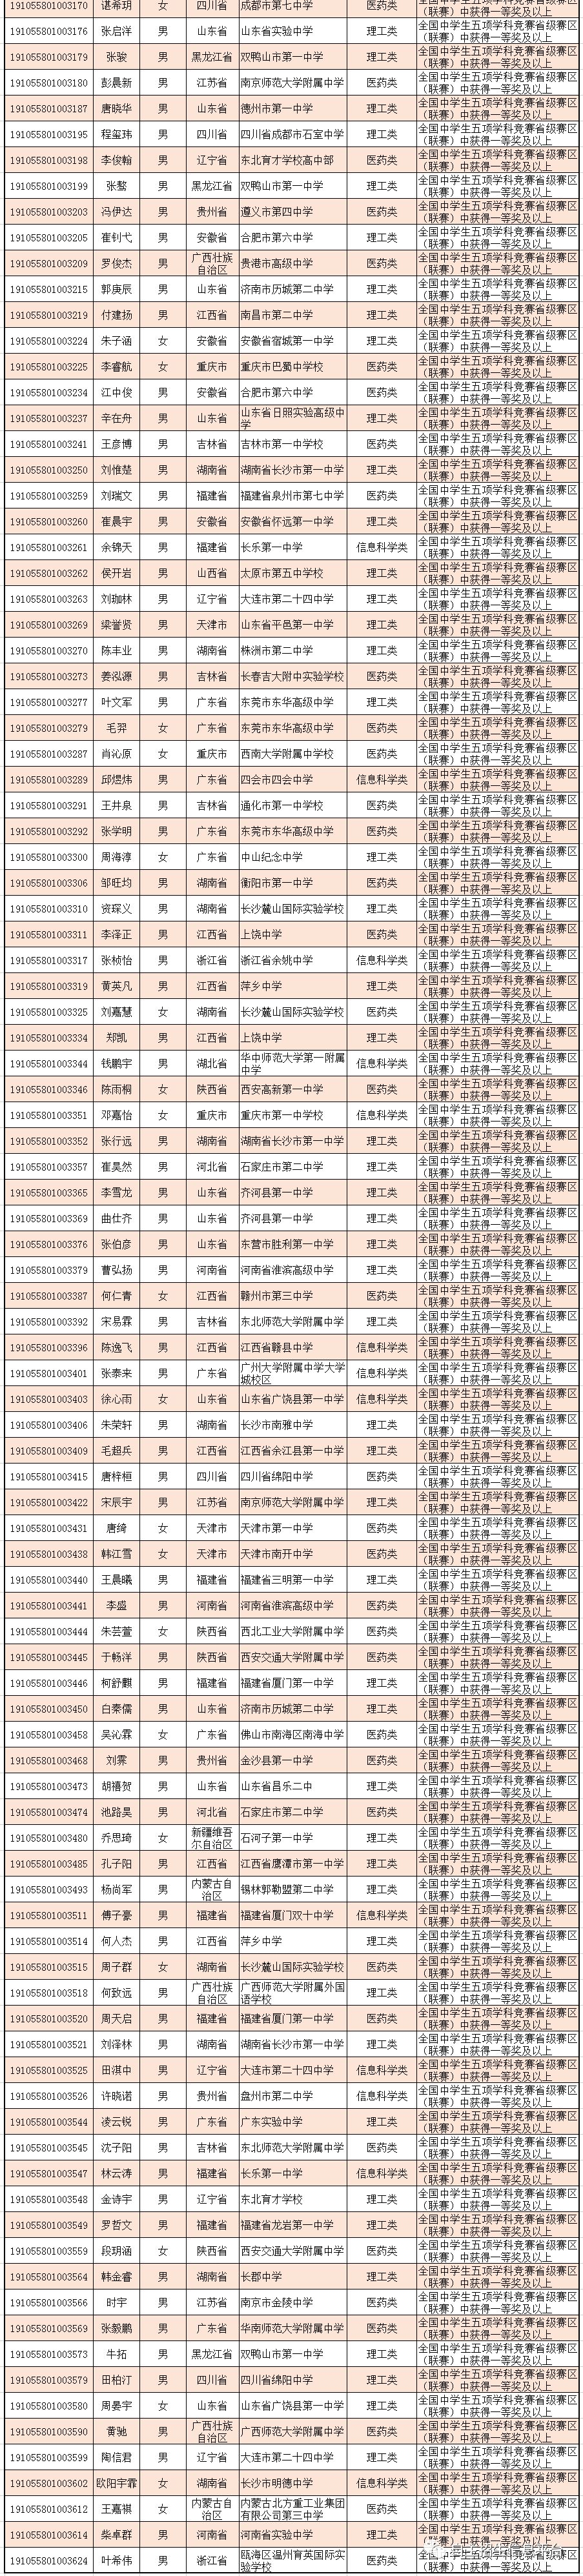 中山大学2019自主招生初审名单发布！共通过398人 